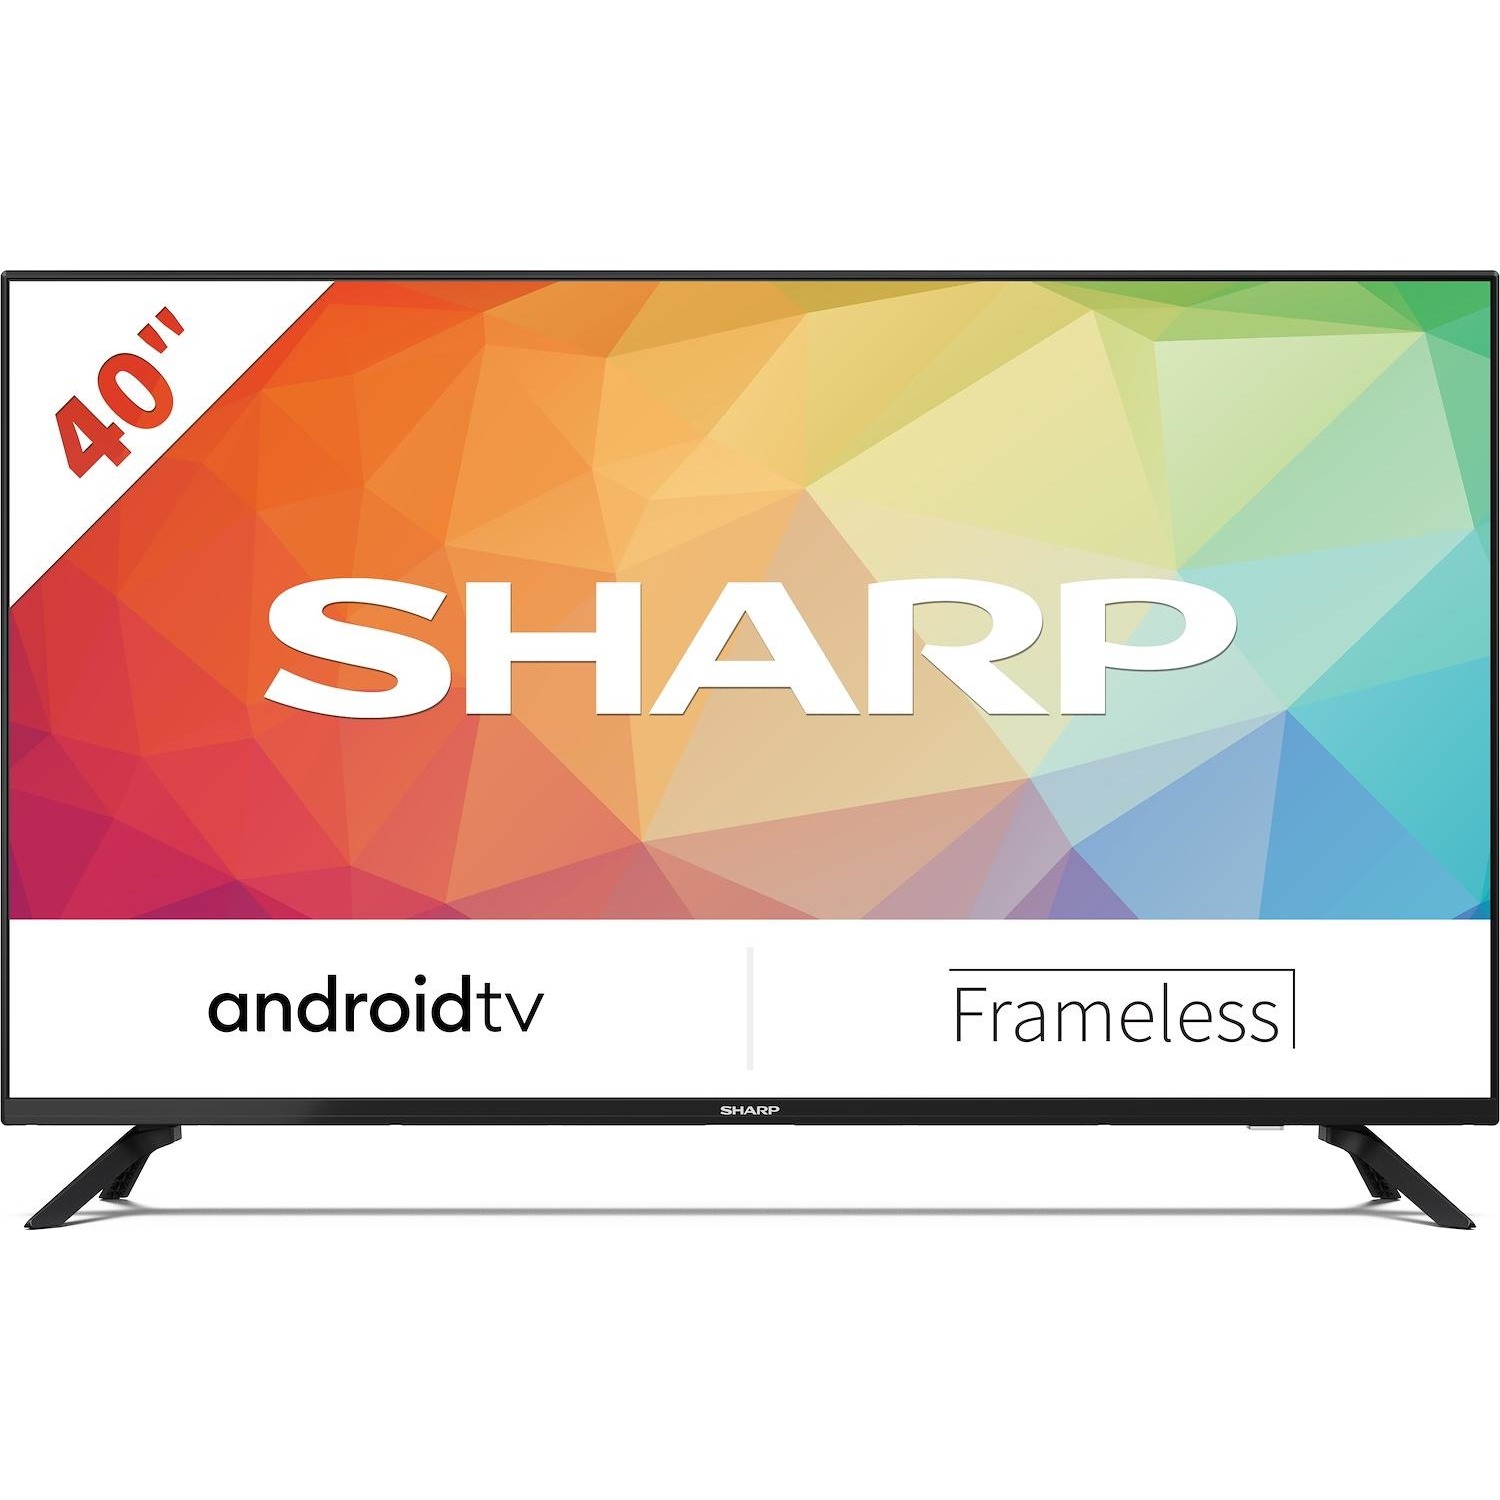 Immagine per TV LED Android Smart Sharp 40FG7EA da DIMOStore